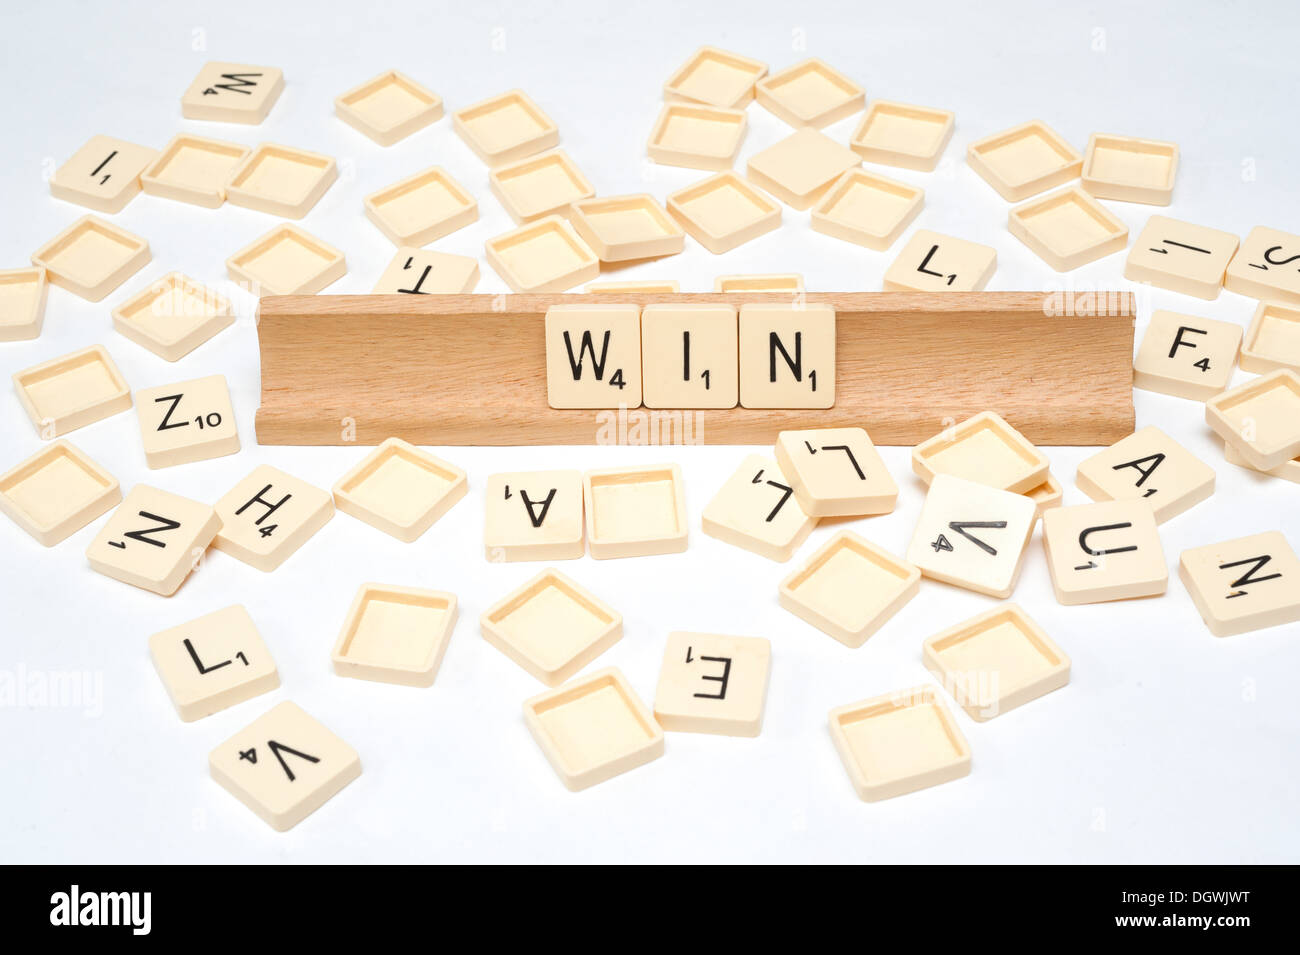 Win' written in scrabble tiles Stock Photo